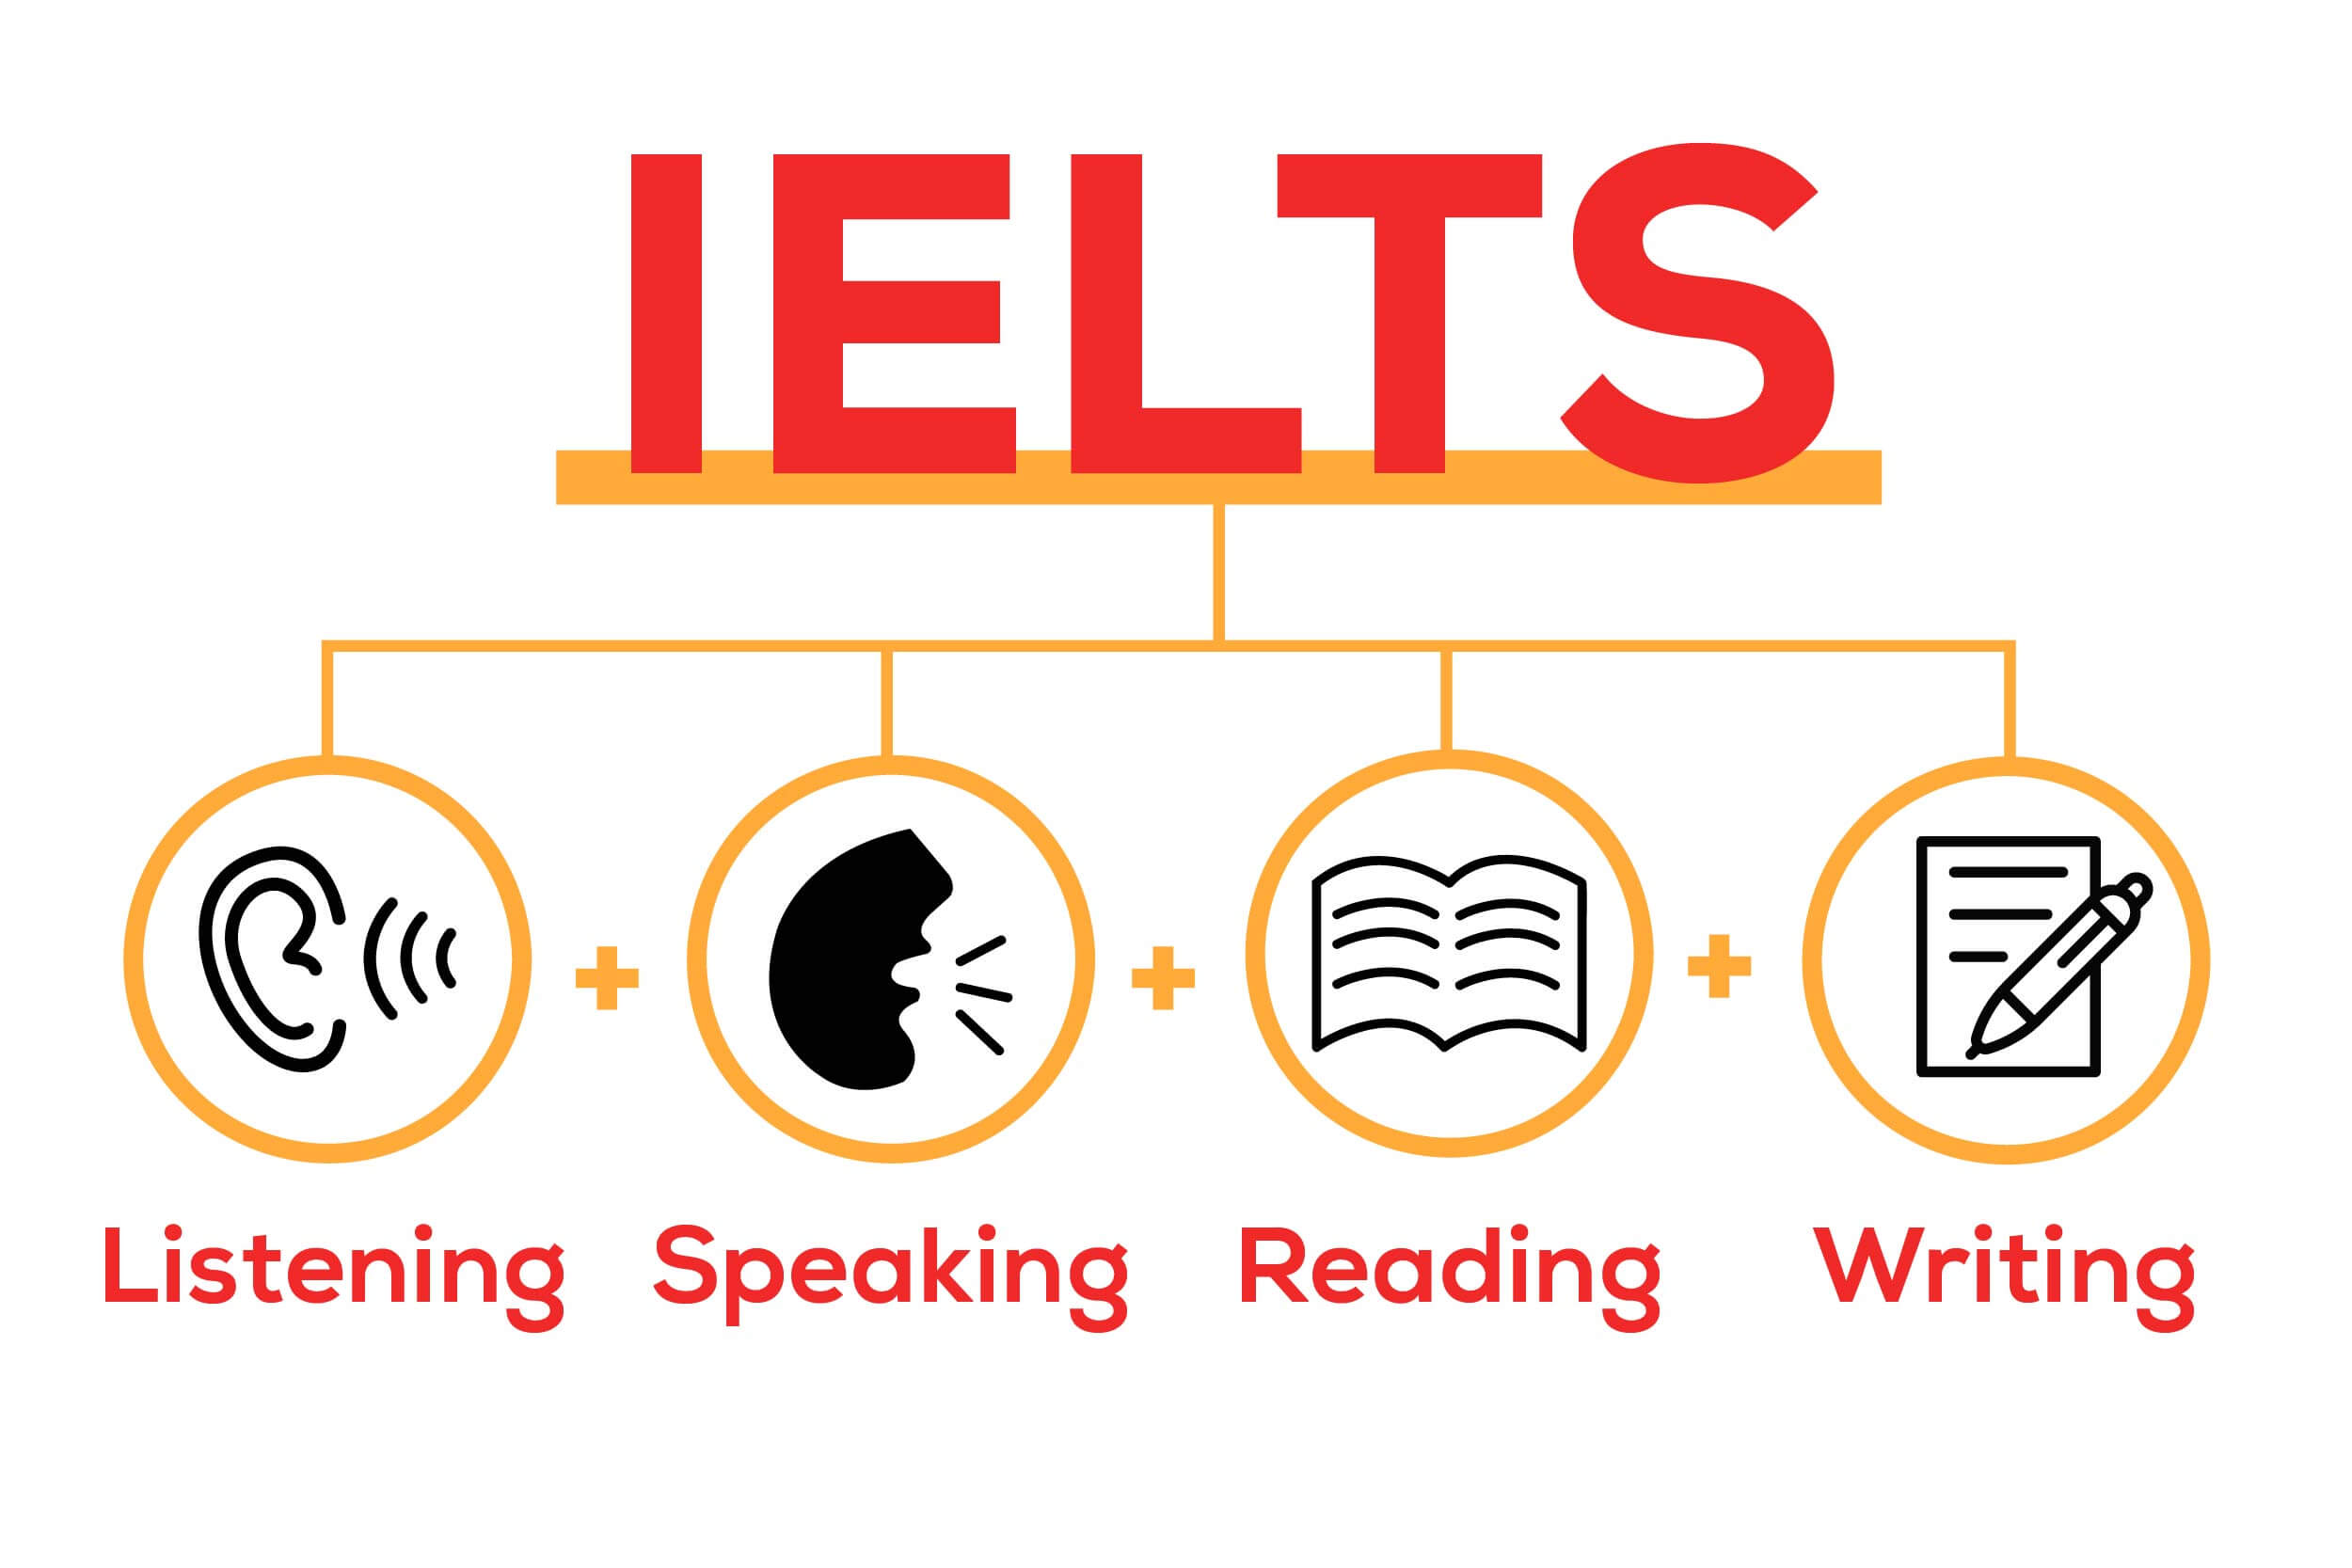 Đề thi IELTS bao gồm 4 kỹ năng - quyết định nên học TOEFL hay IELTS